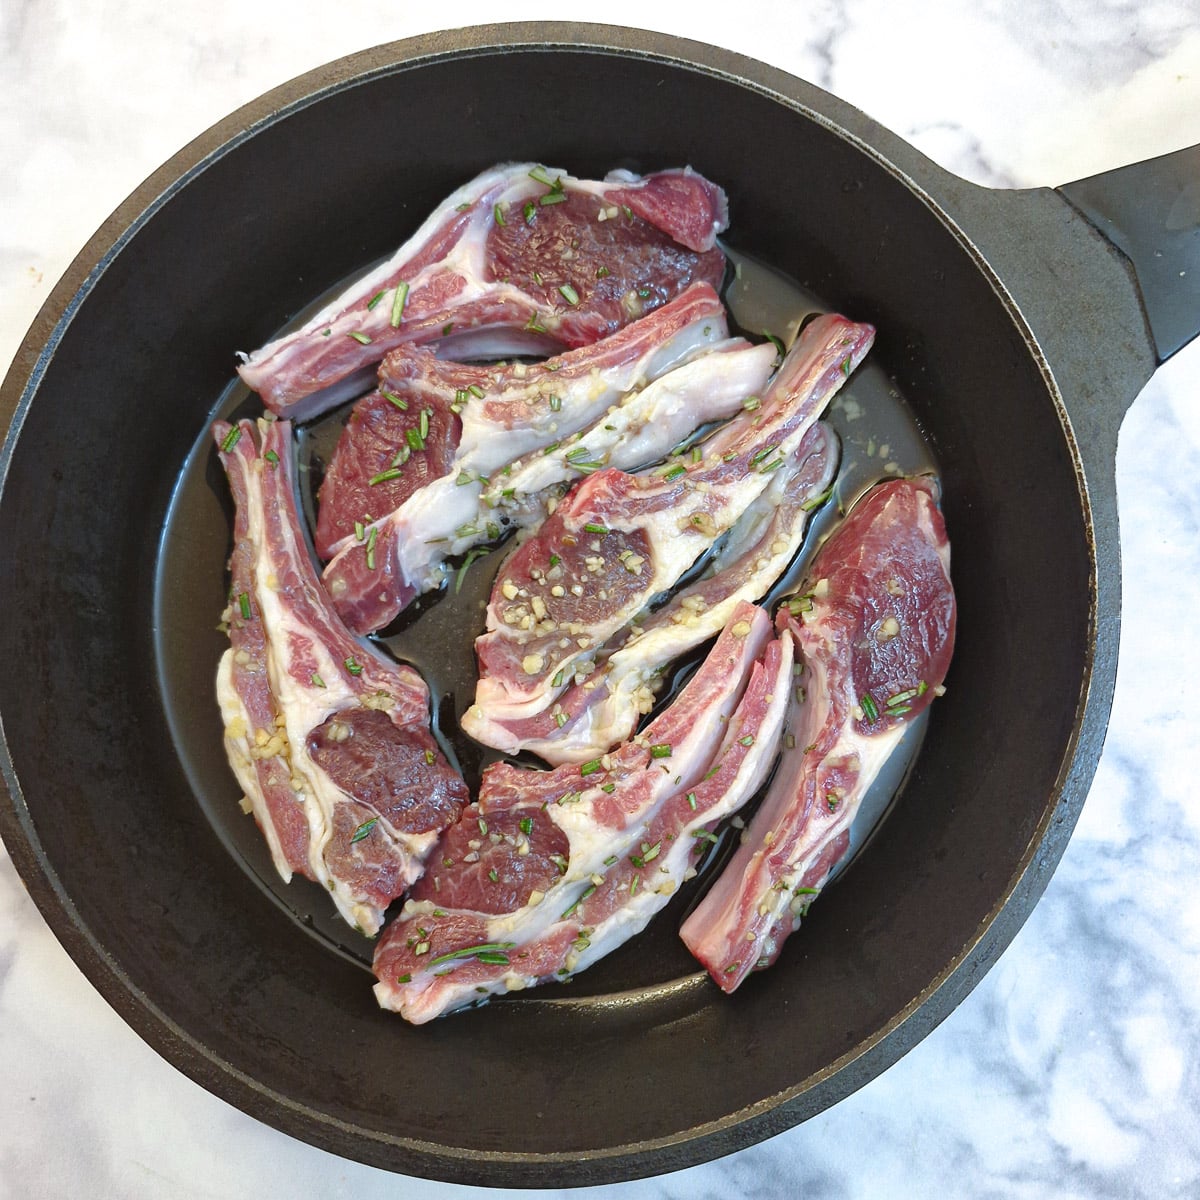 6 raw lamb chops in a frying pan.